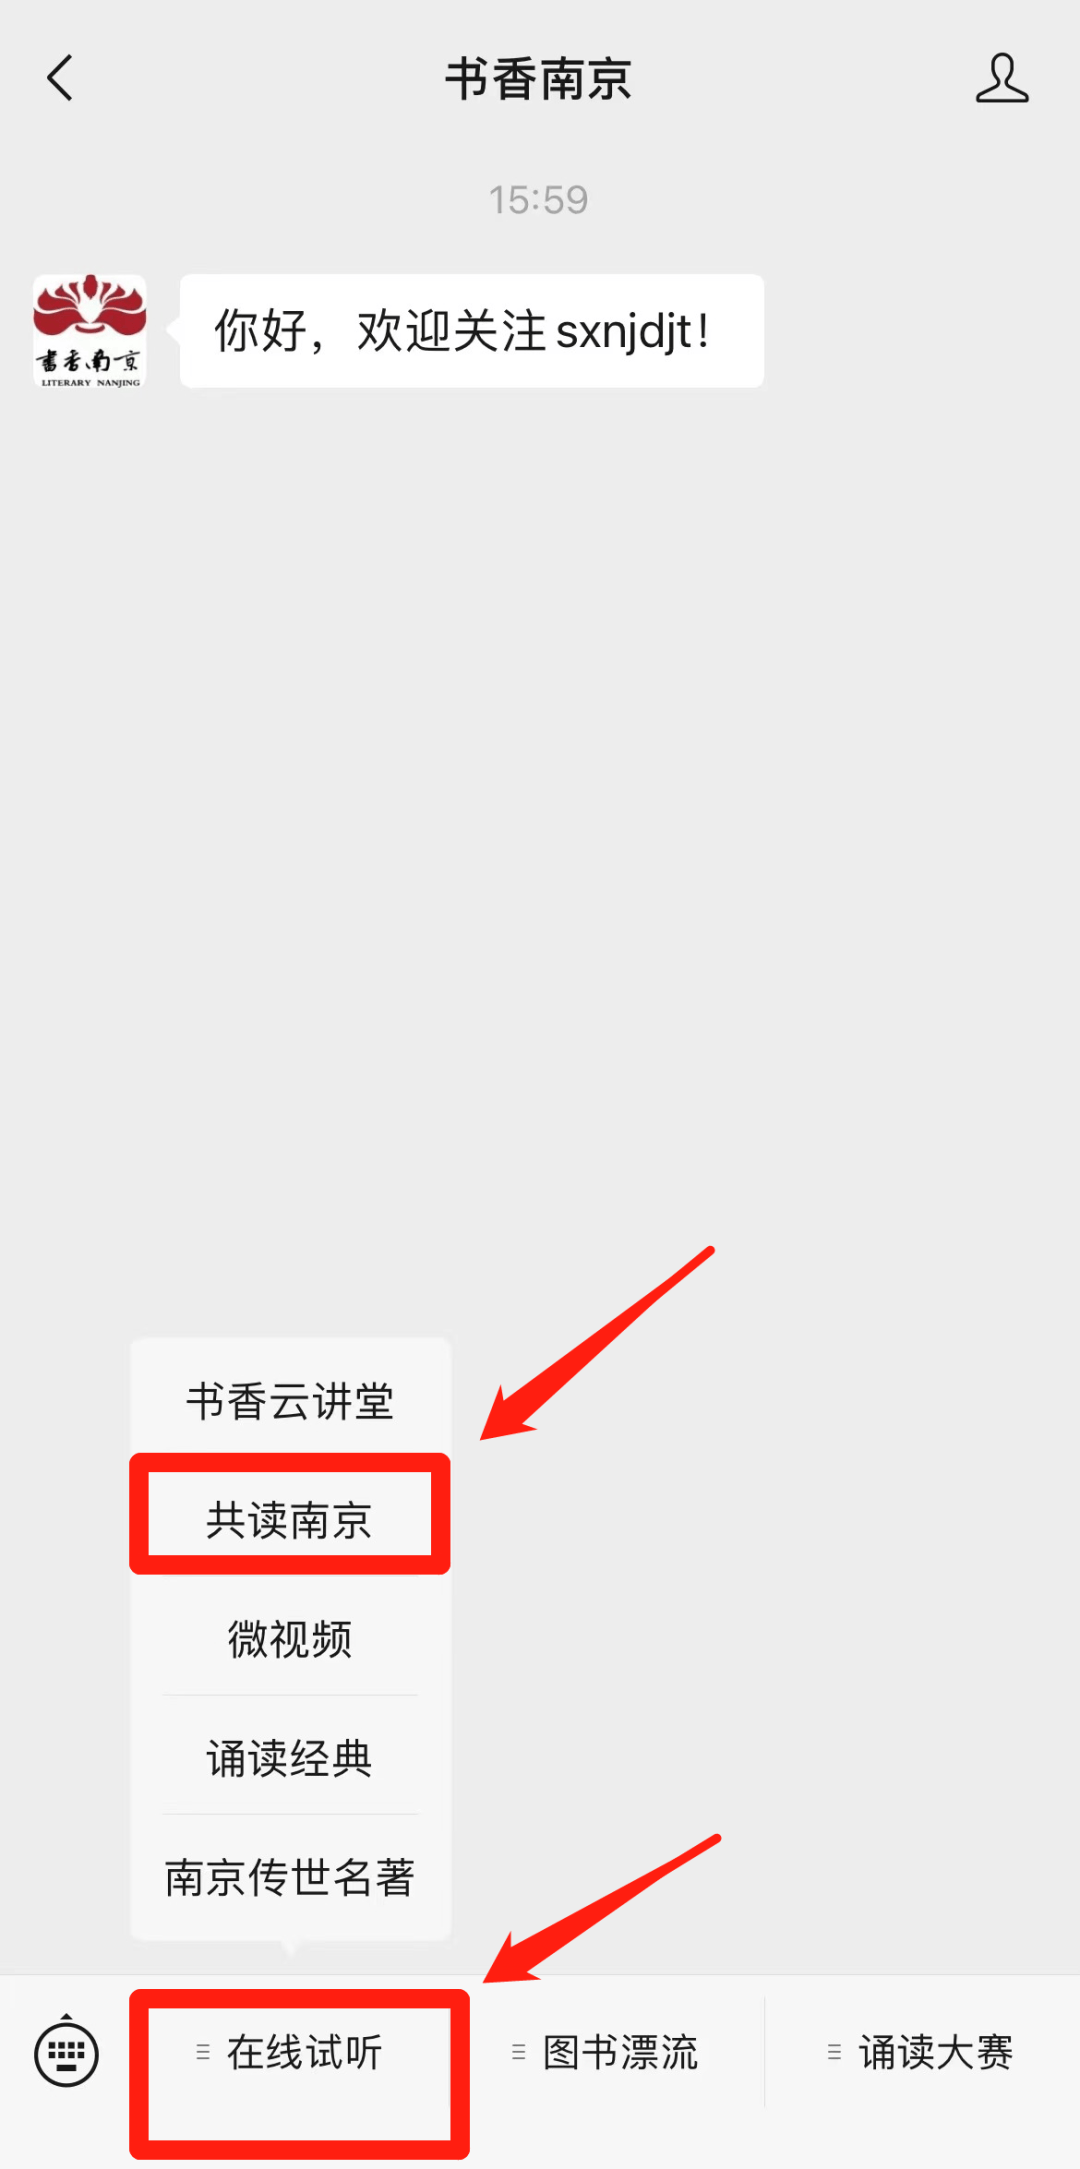 大讲堂直播页面,即可收看视频直播方法3下载南京广电「牛咔视频」app